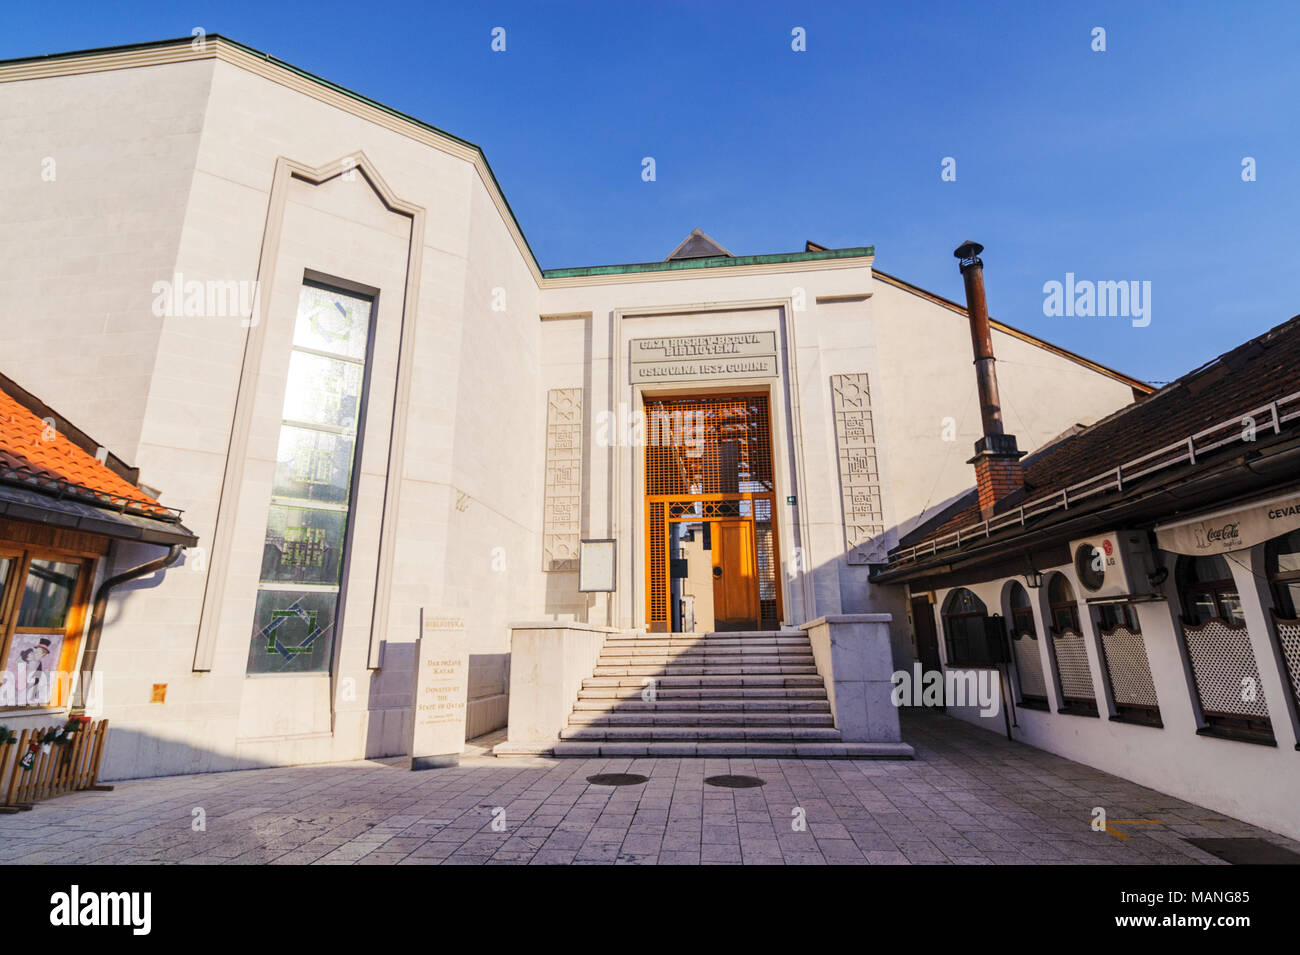 SARAJEVO, BOSNIEN - Jan 26, 2018: Eingang der Gazi Husrev Beg-moschee Biblioteka, eine historische Bibliothek Museum. Der Bezirk haben viele türkische alte Häuser im kommerziellen Geschäften und kulturellen Gebäuden Stockfoto